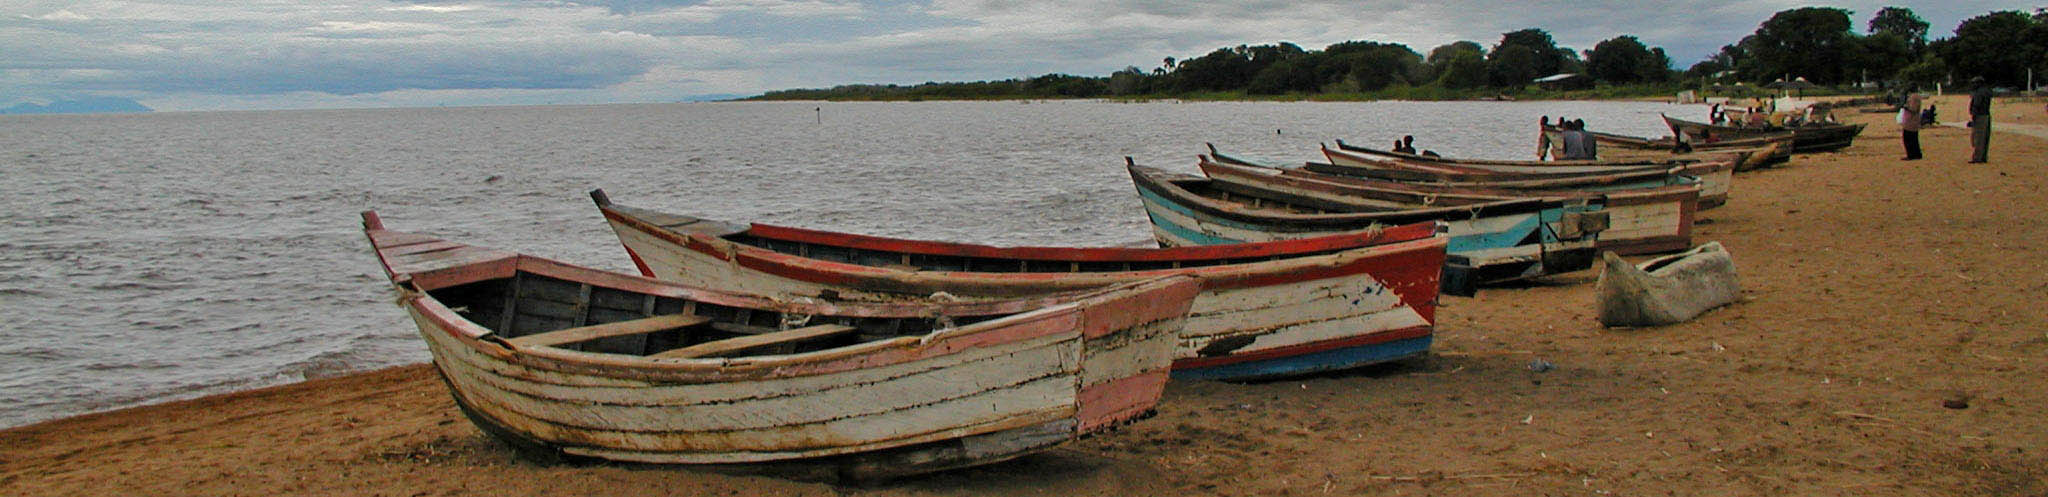 Lake Malawi Wikimedia